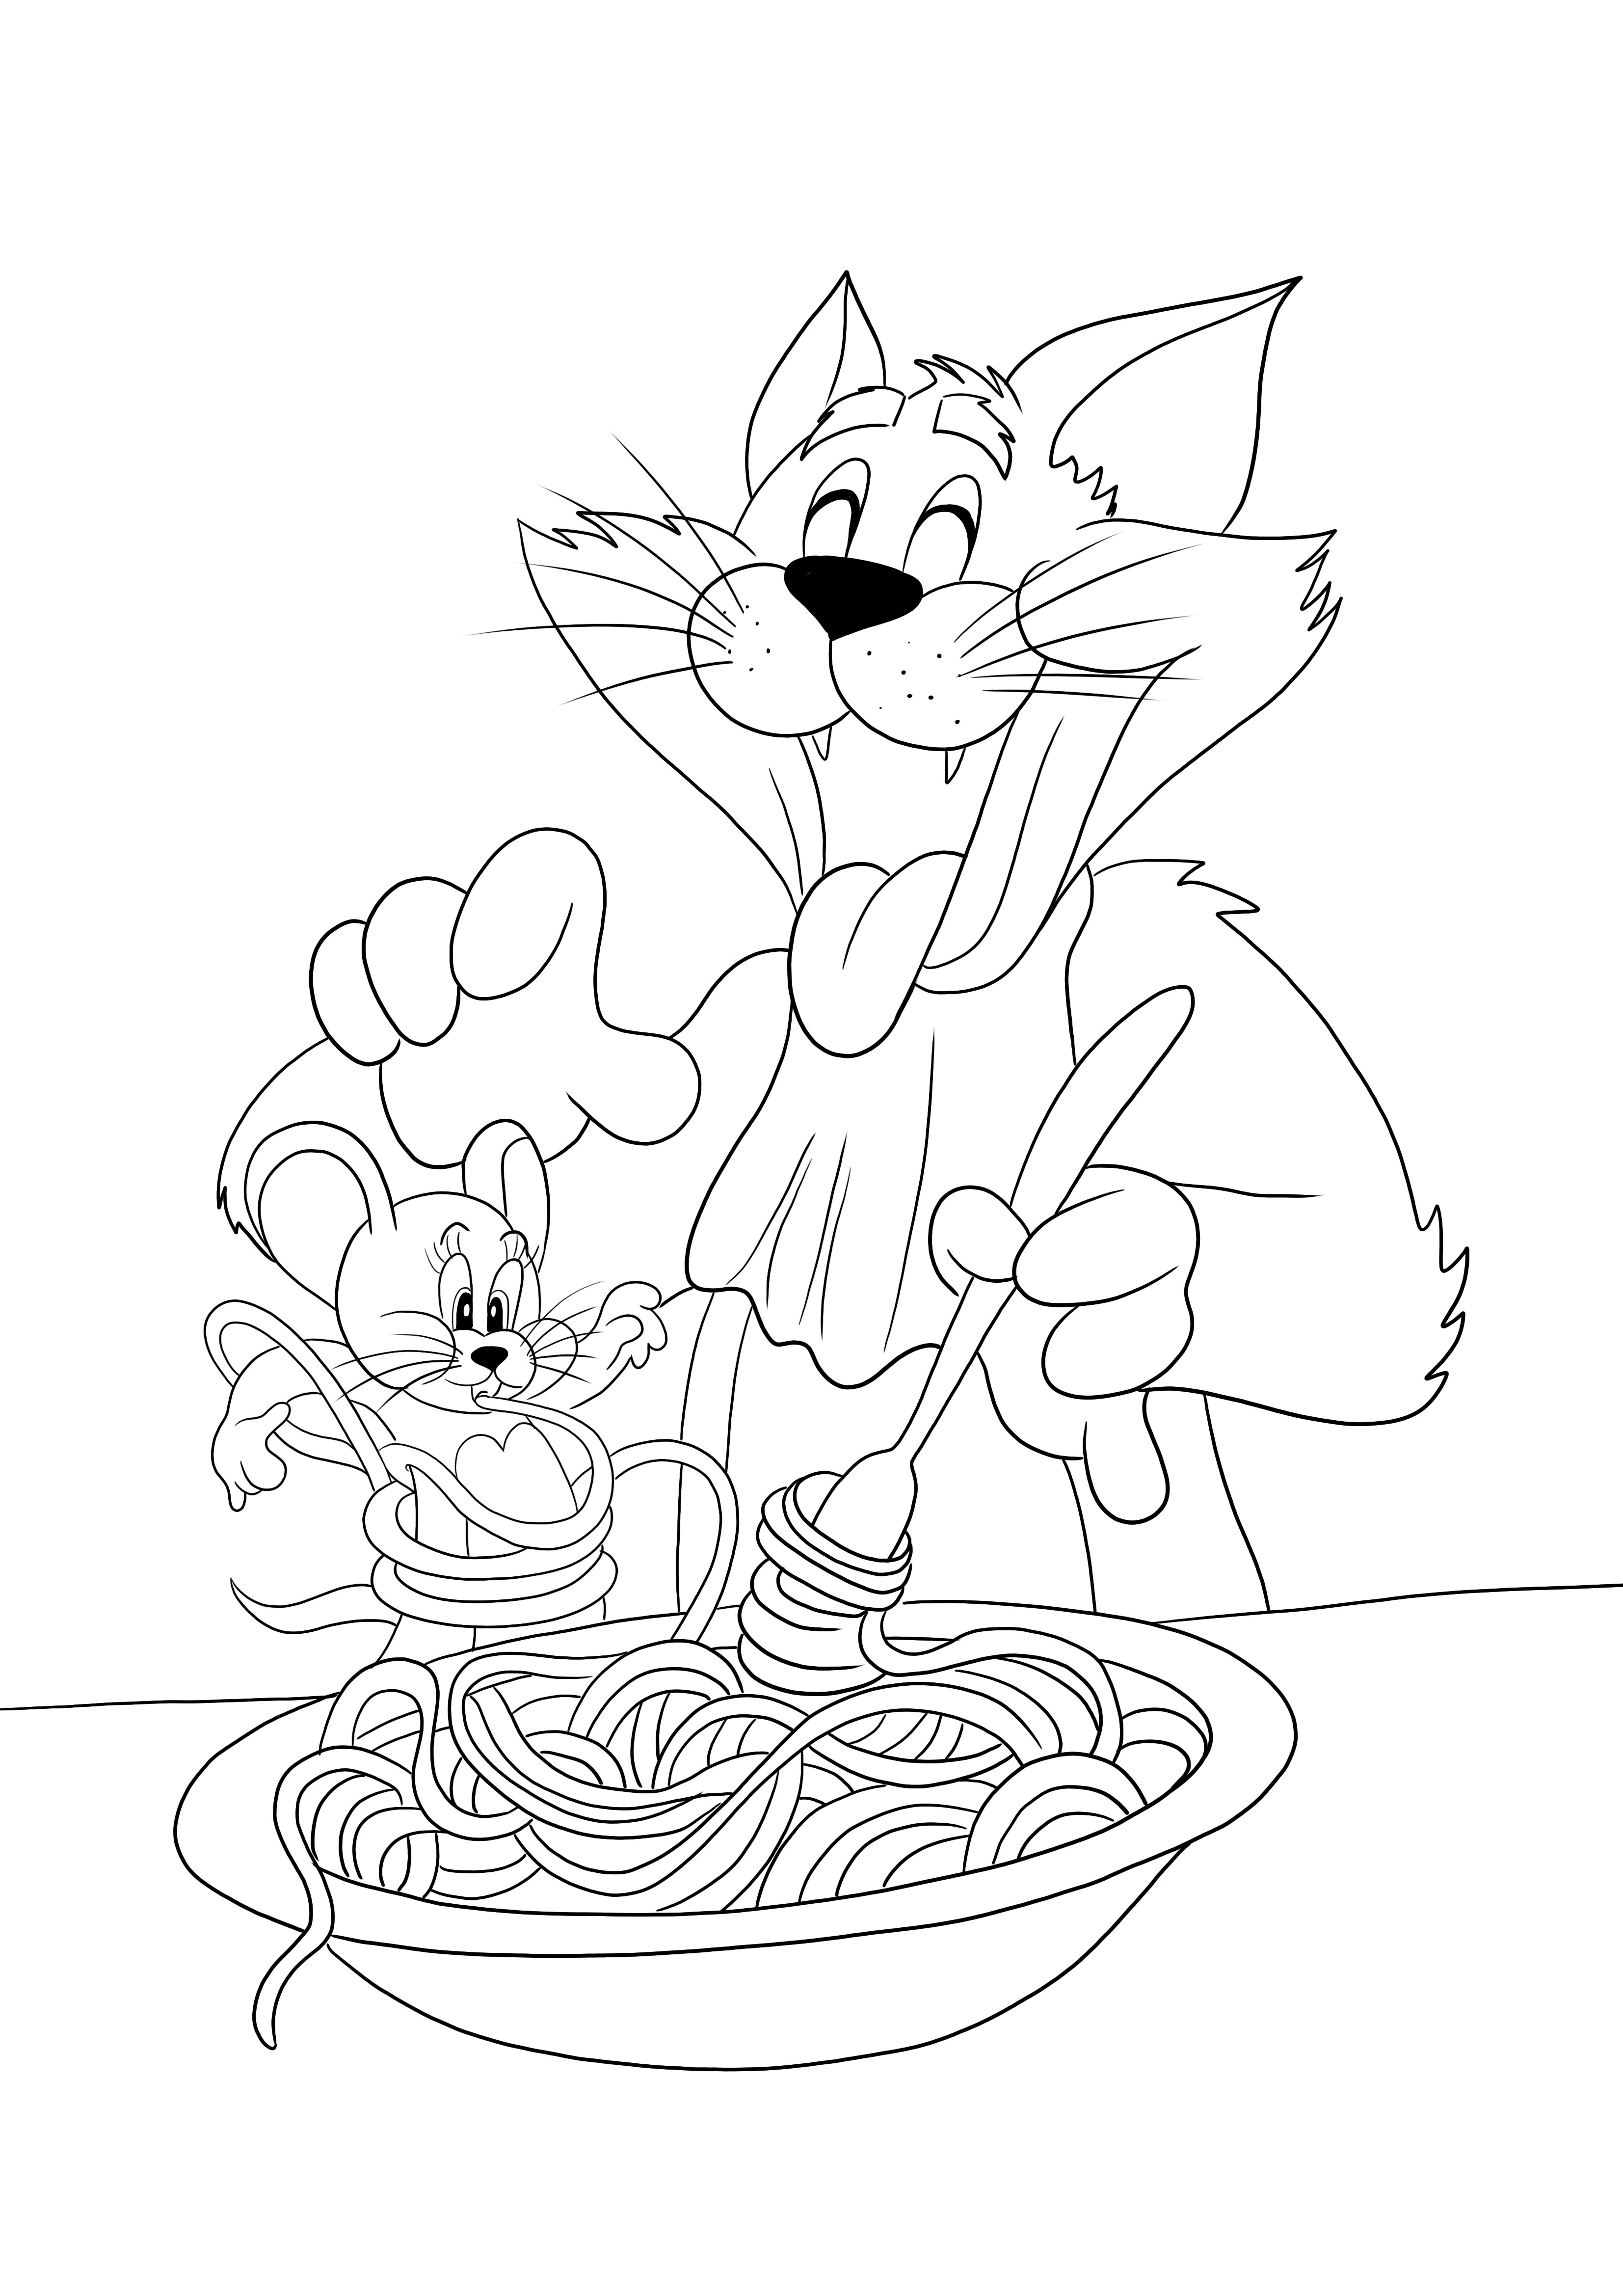 Tom mange des nouilles et Jerry-un drôle imprimable prêt à colorier